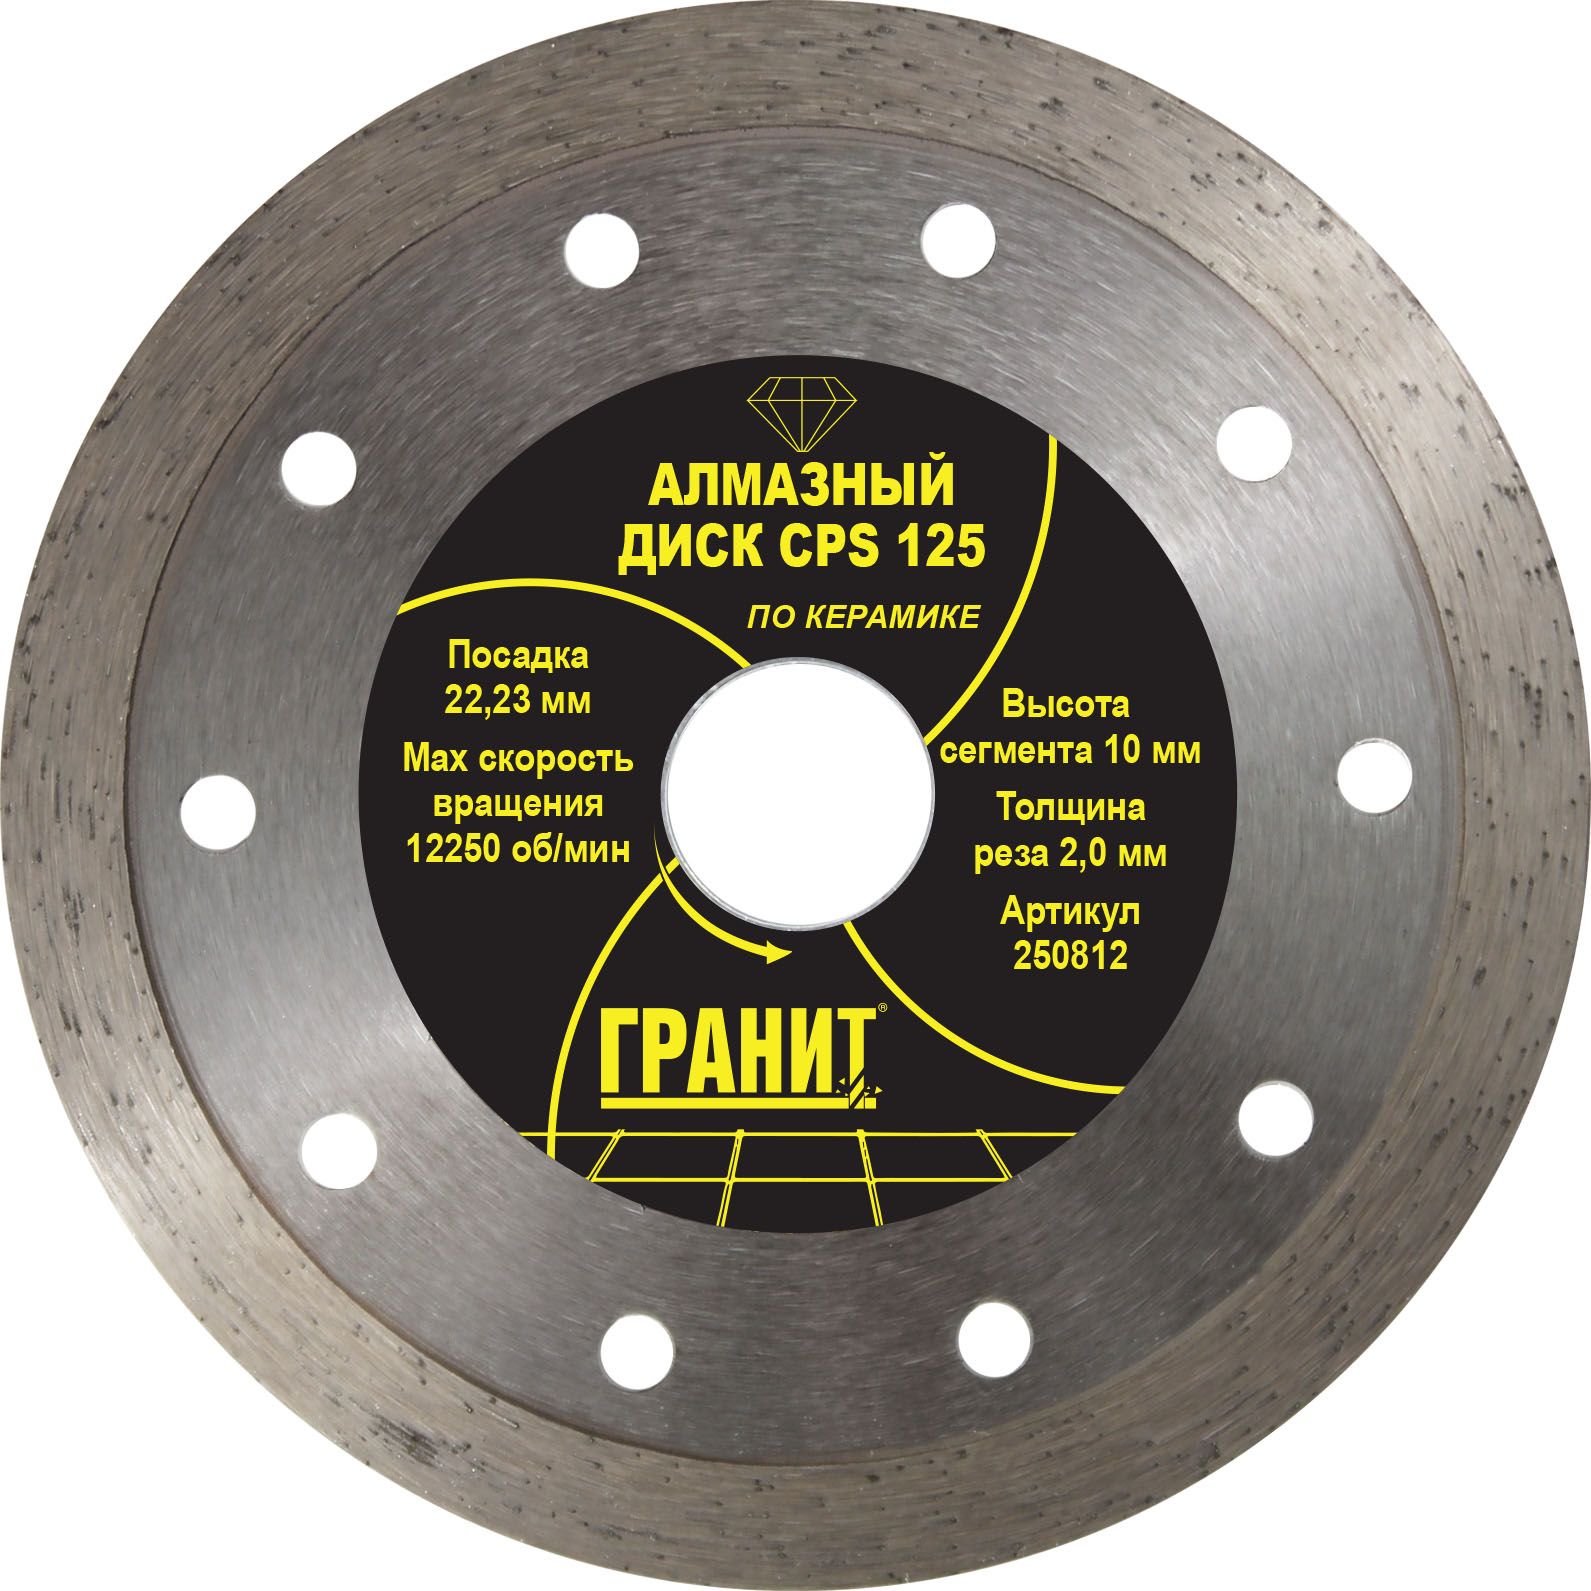 товар Алмазный диск по керамике Гранит CPS 125x2.0x10 250812 Гранит магазин Tehnorama (официальный дистрибьютор Гранит в России)